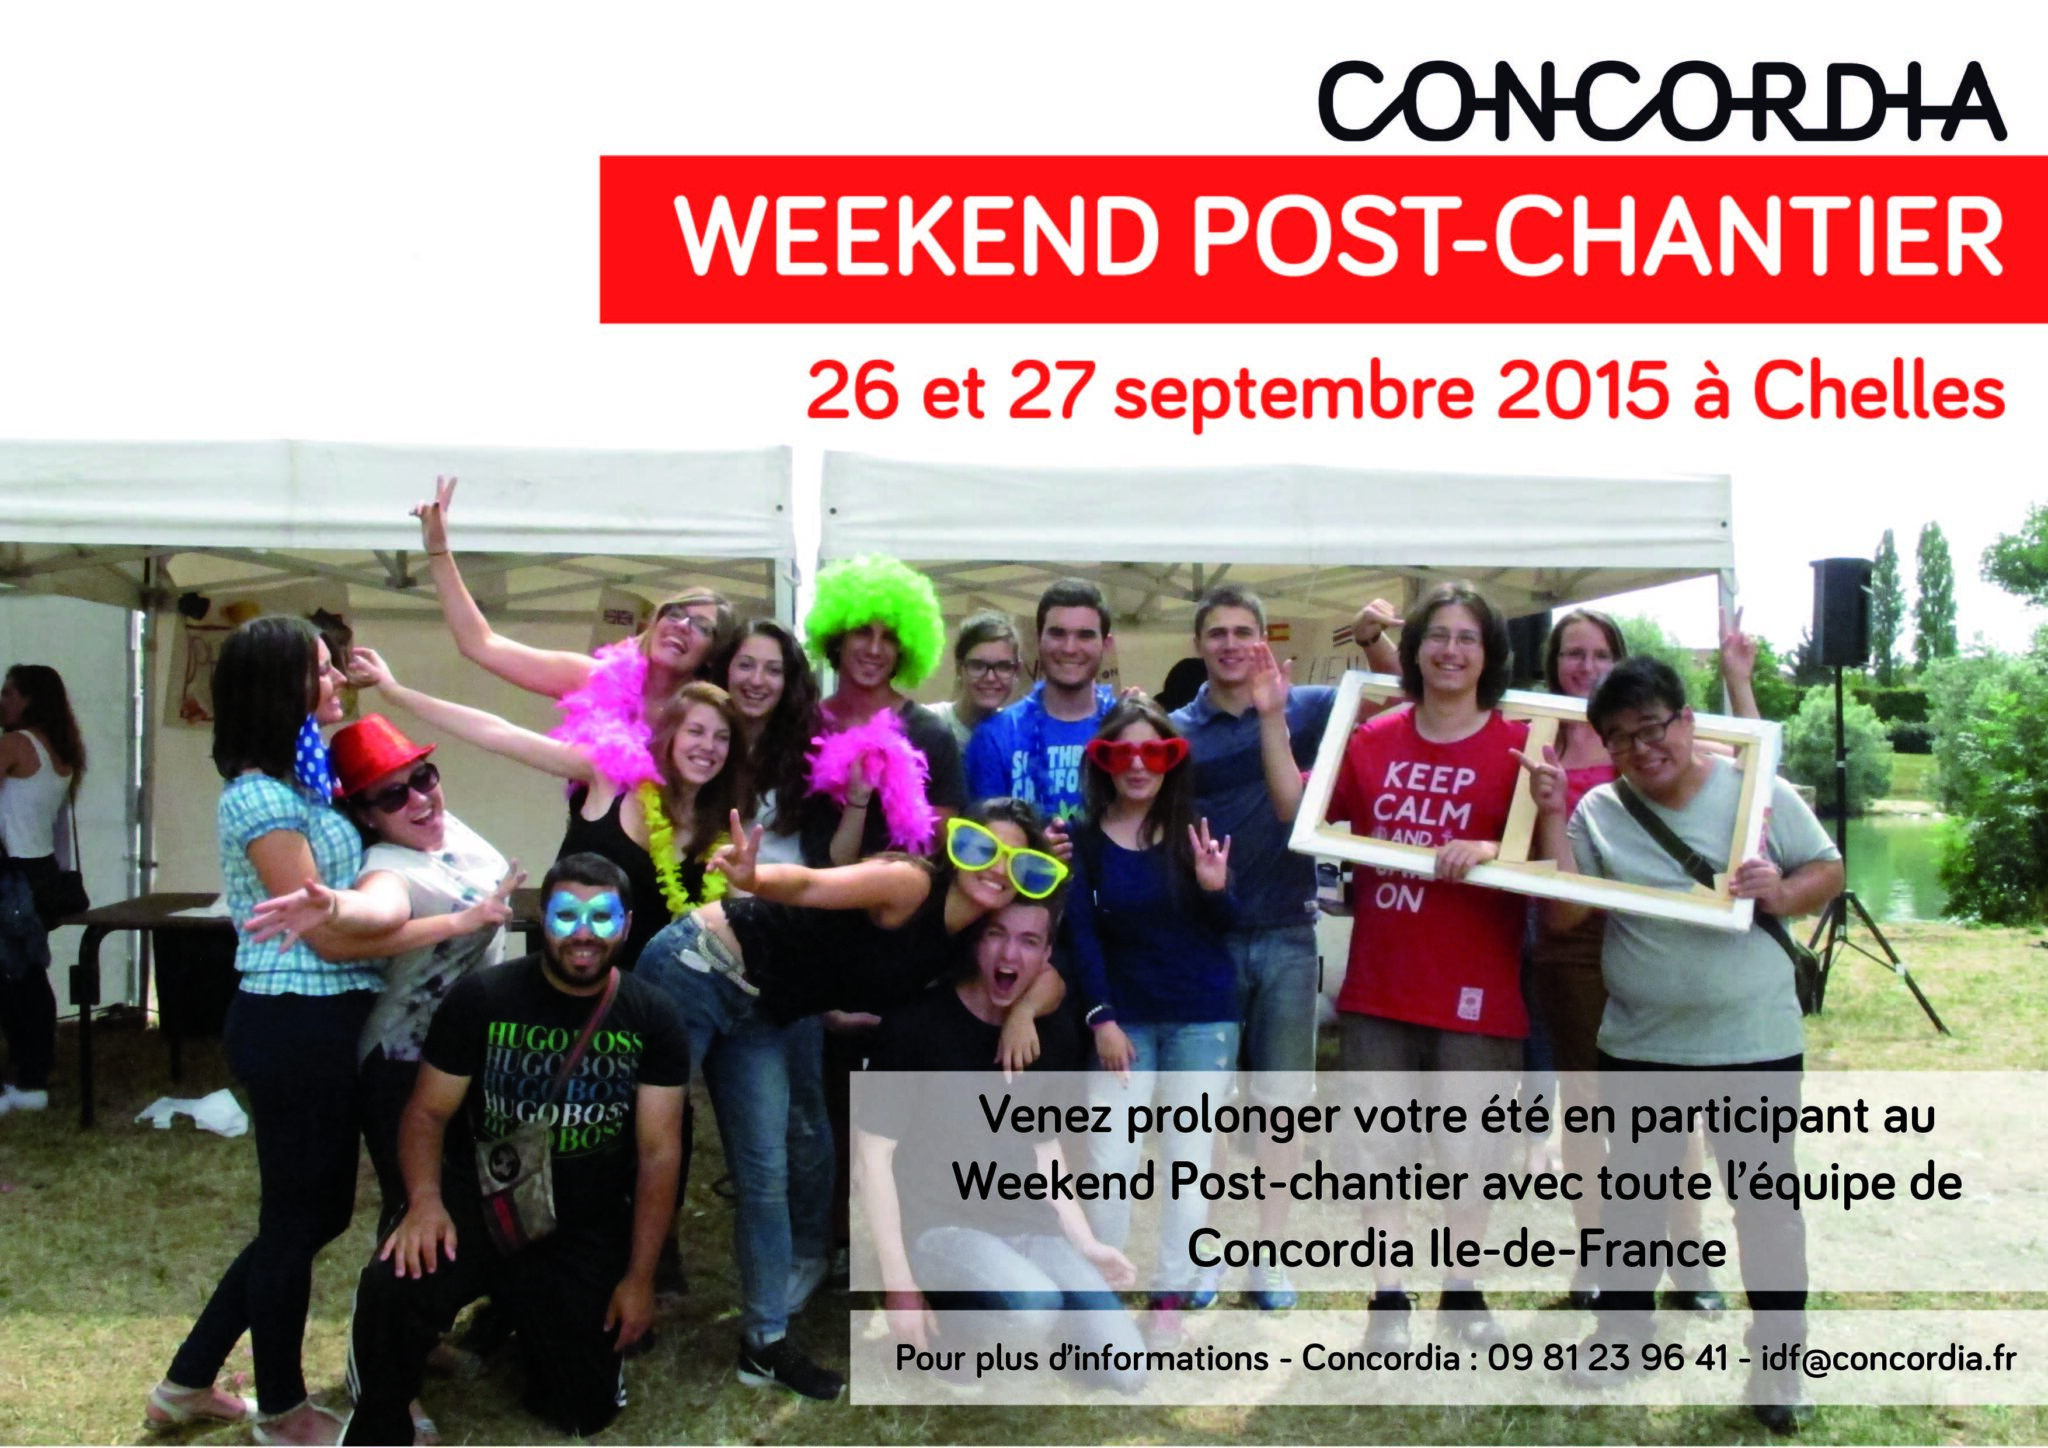 Concordia - Weekend Post-chantier Île-de-France